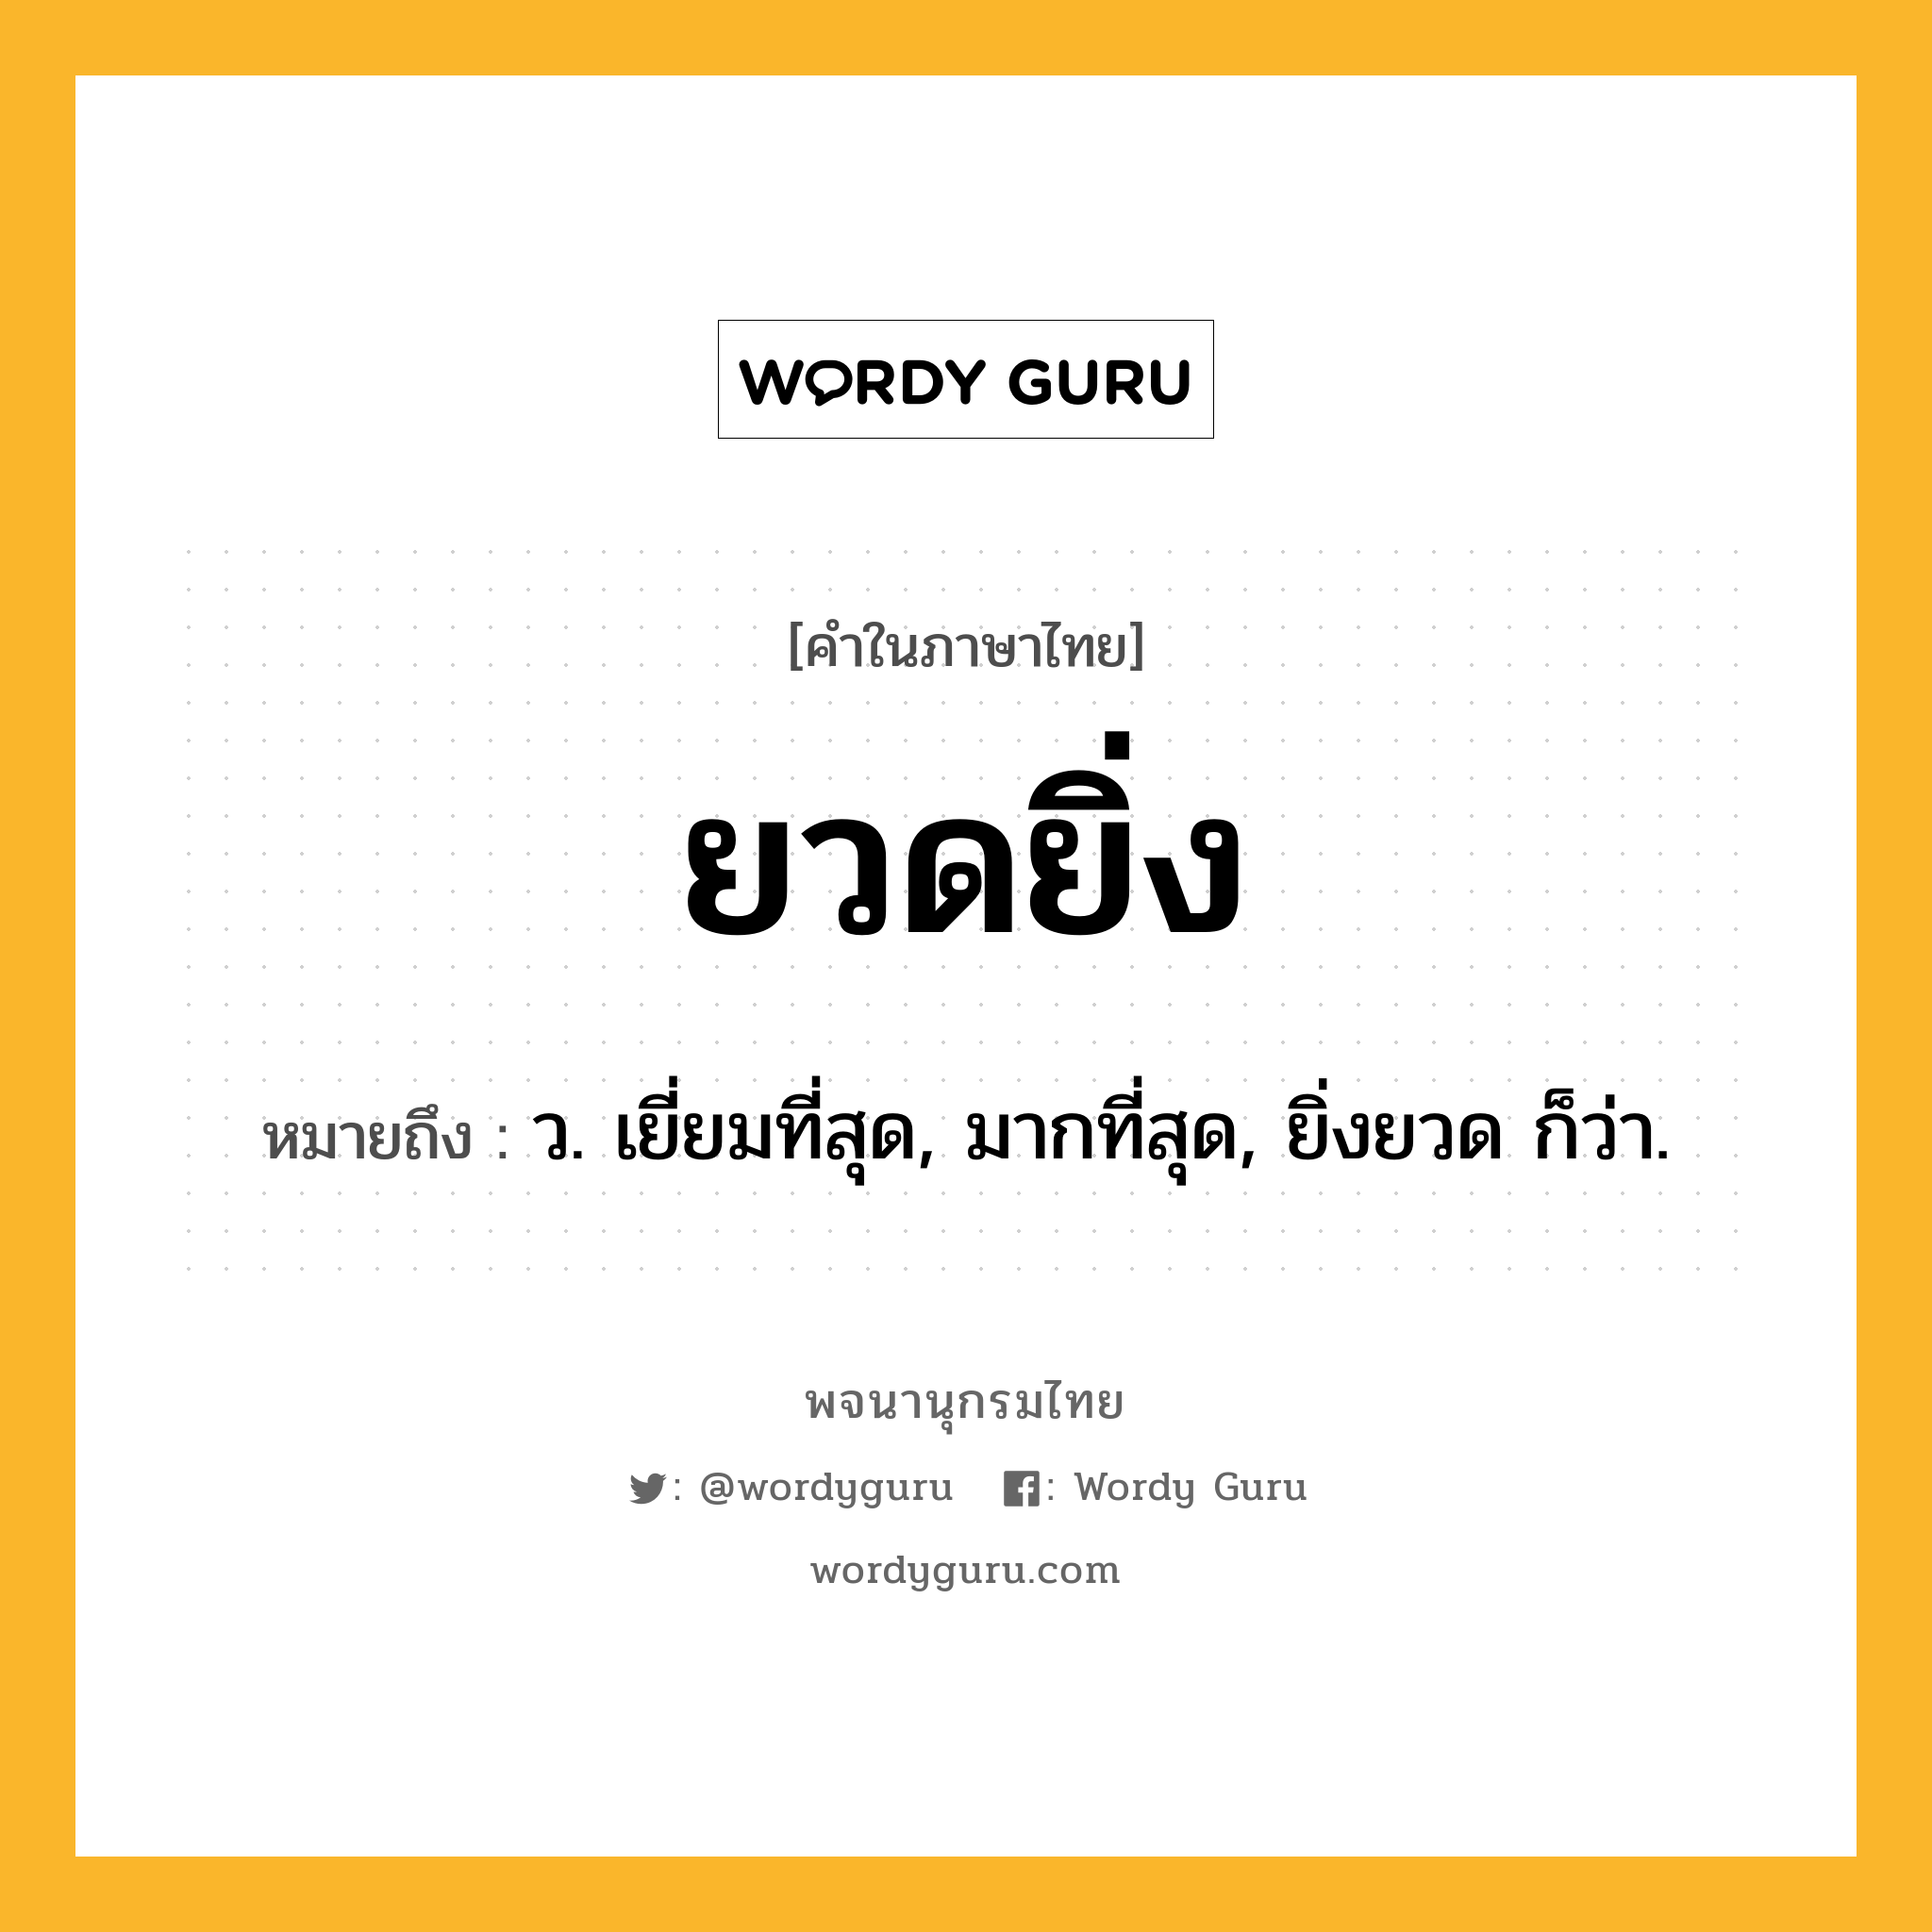 ยวดยิ่ง หมายถึงอะไร?, คำในภาษาไทย ยวดยิ่ง หมายถึง ว. เยี่ยมที่สุด, มากที่สุด, ยิ่งยวด ก็ว่า.